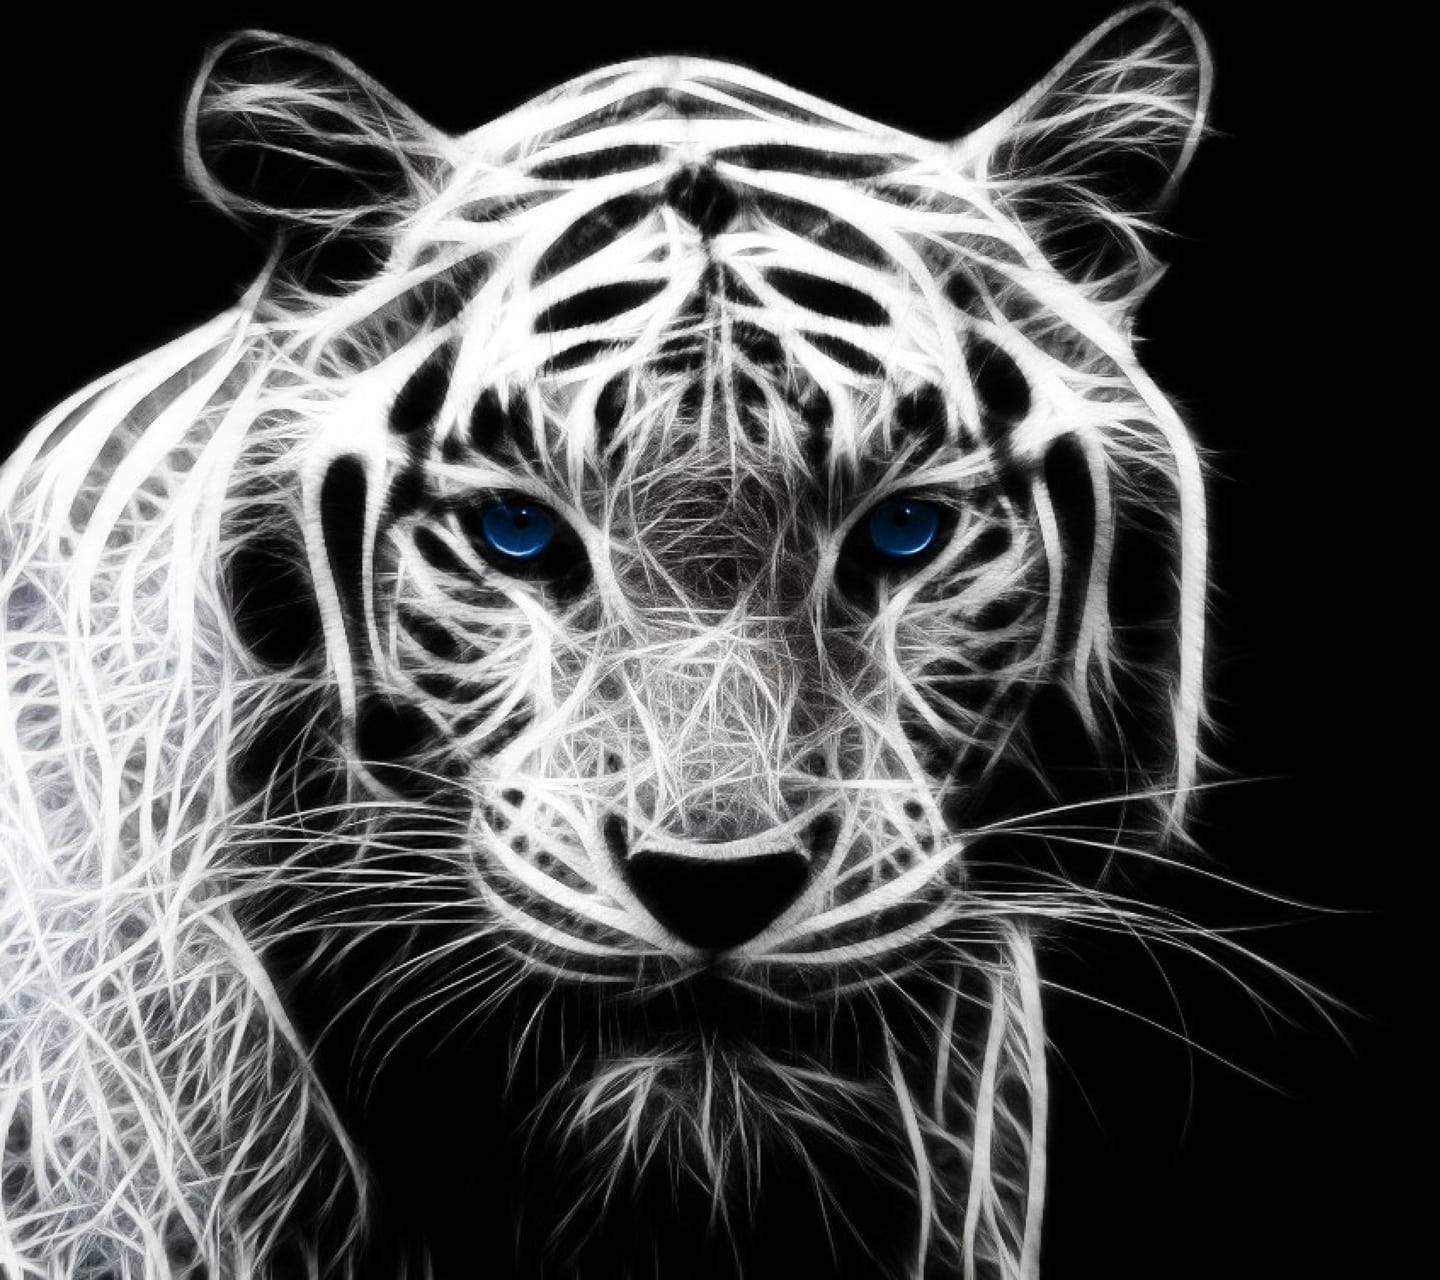 Digital Artwork Of Black Tiger